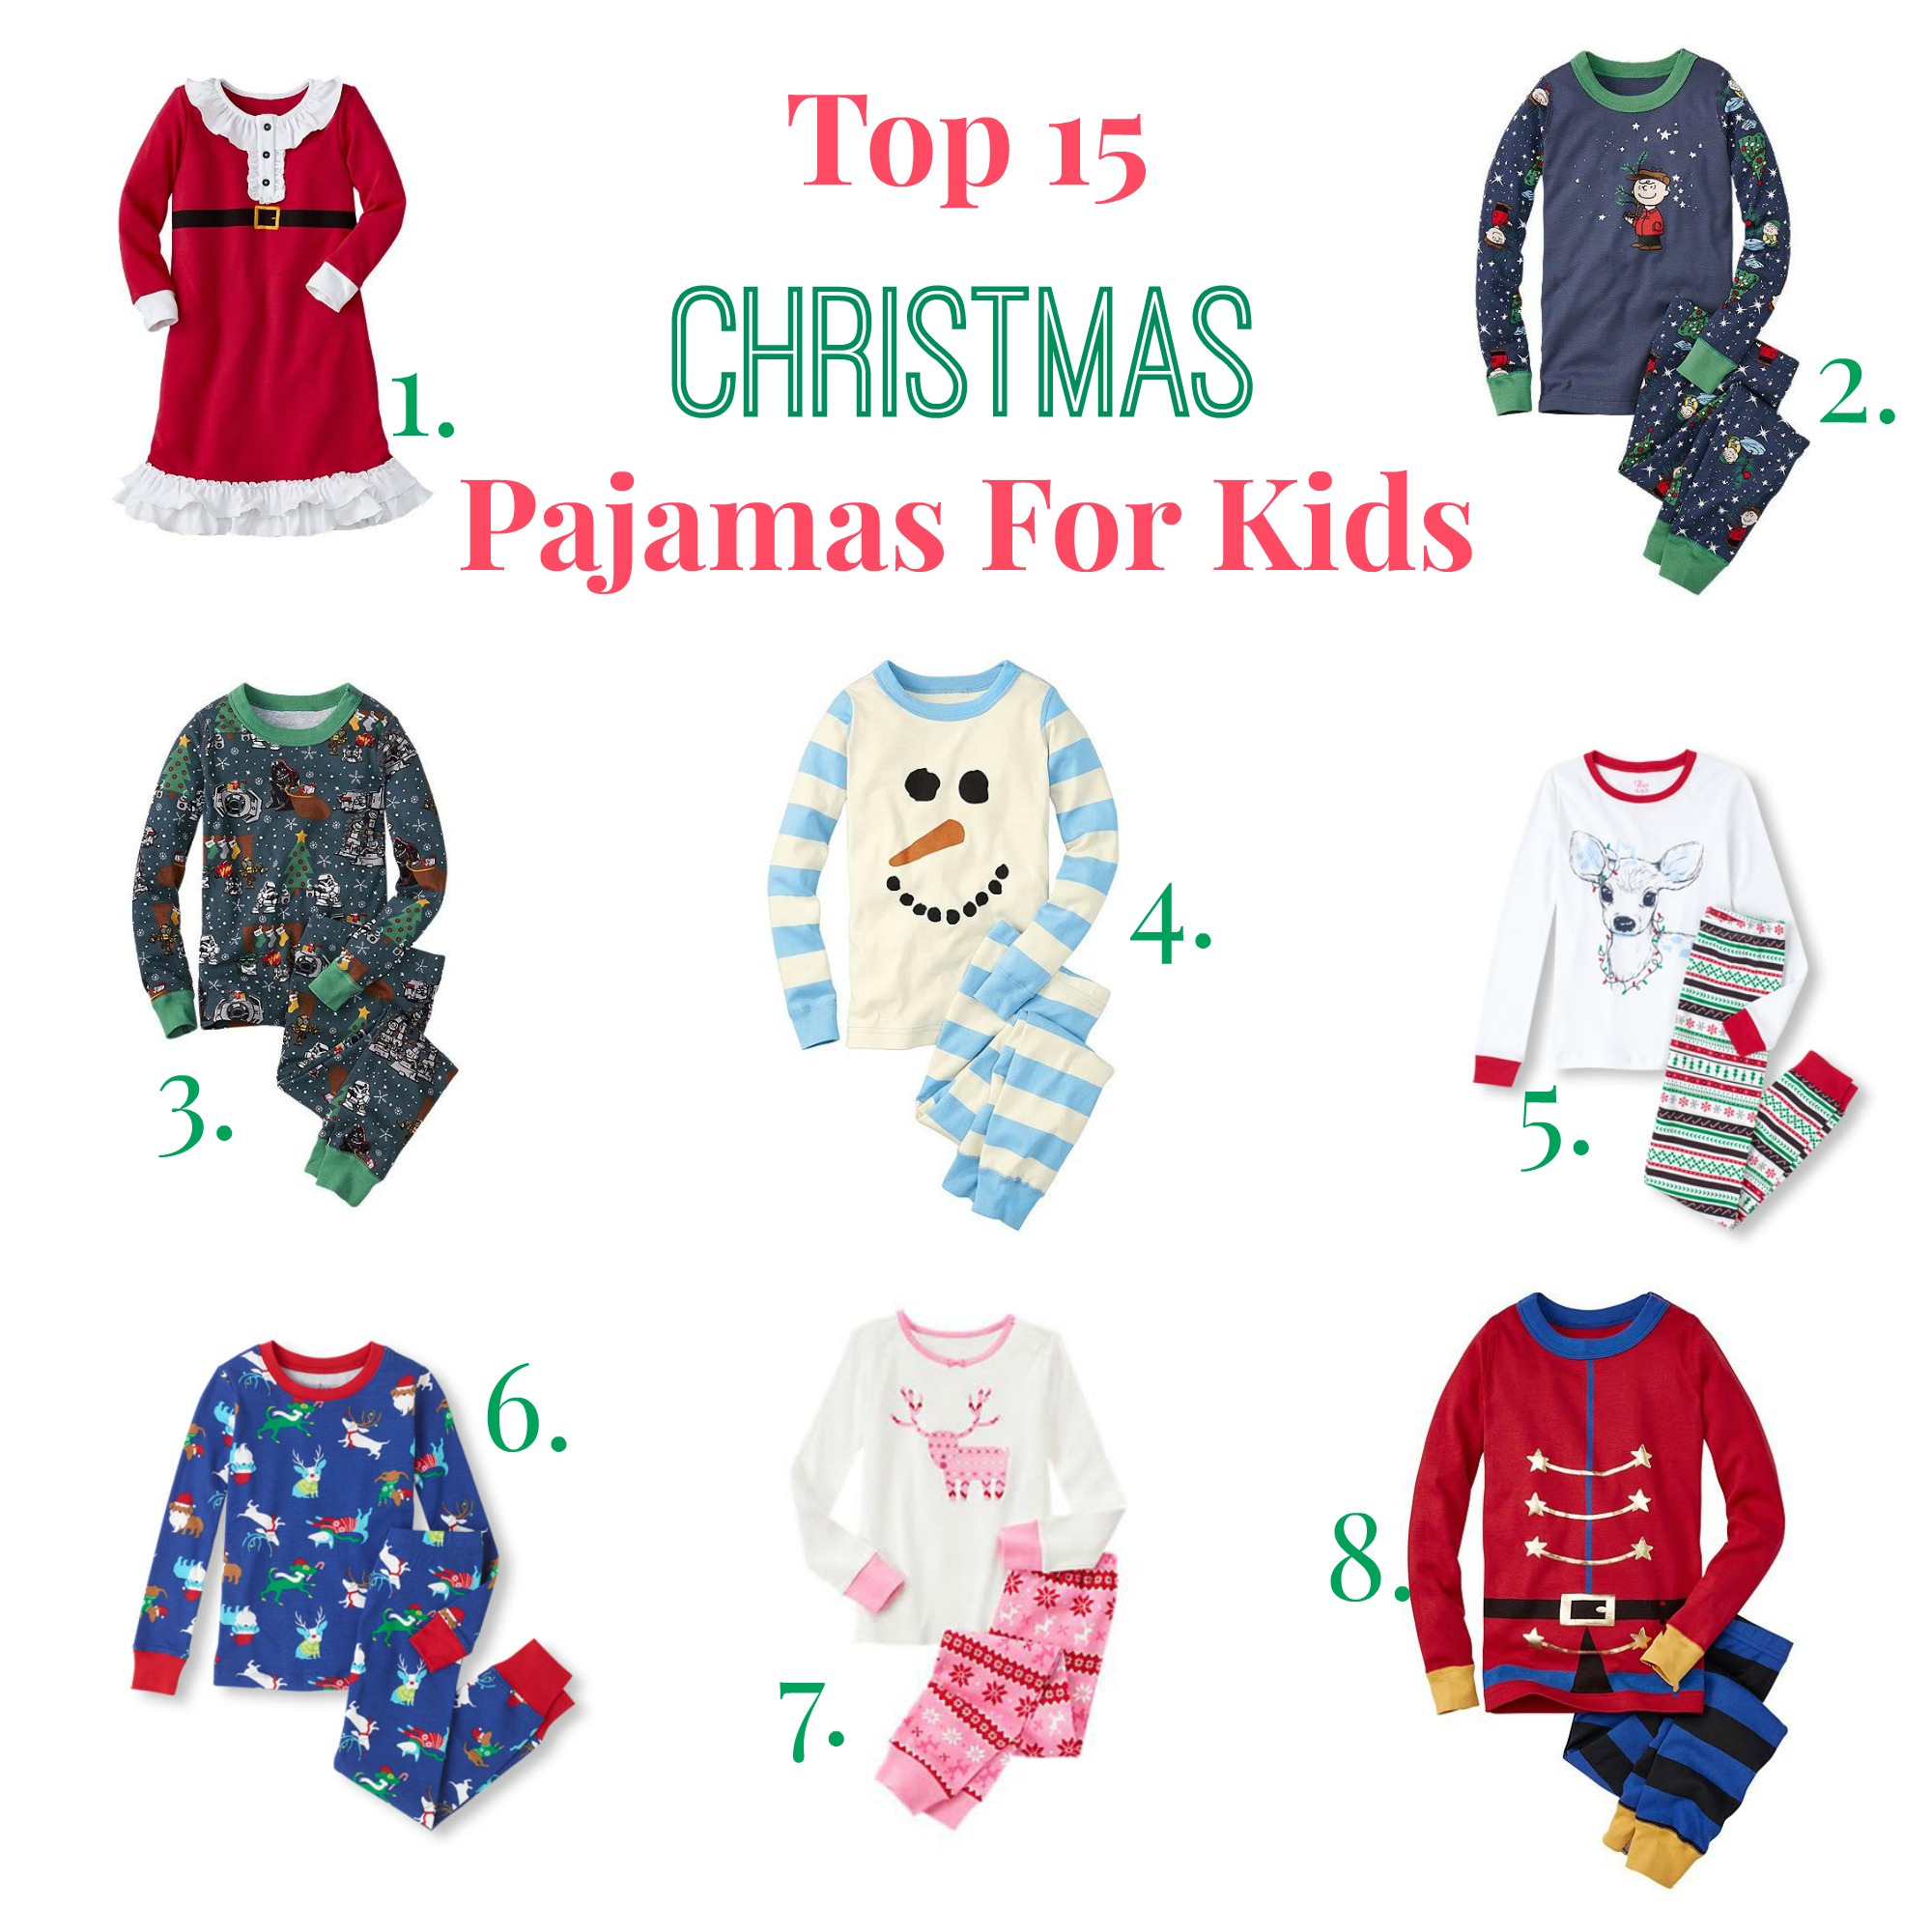 Top 15 Christmas Pajamas for Kids